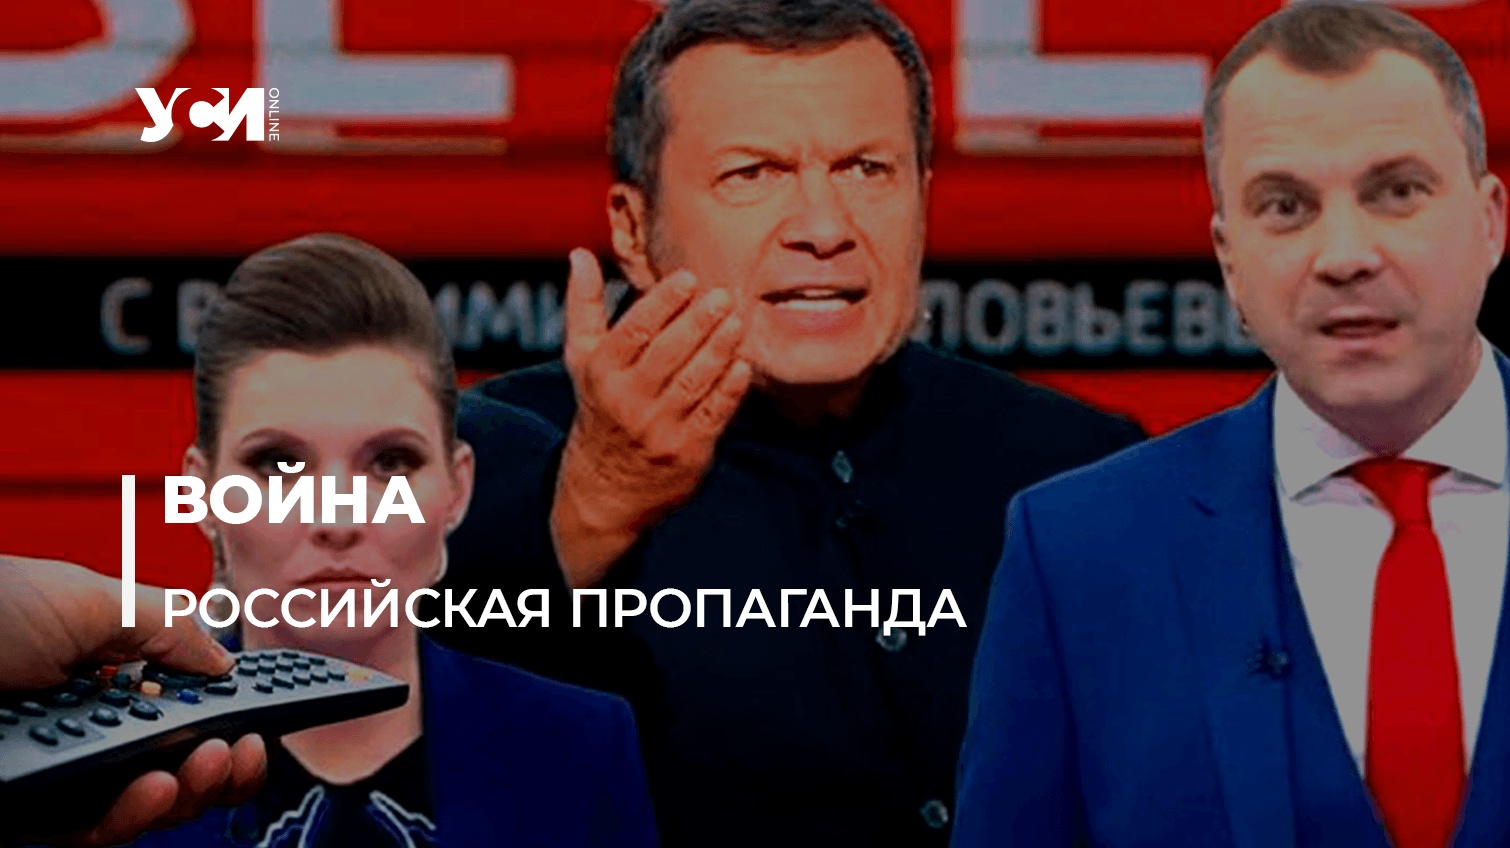 Полная демонизация: пропагандисты кремля начали разжигать ненависть ко всем украинцам «фото»